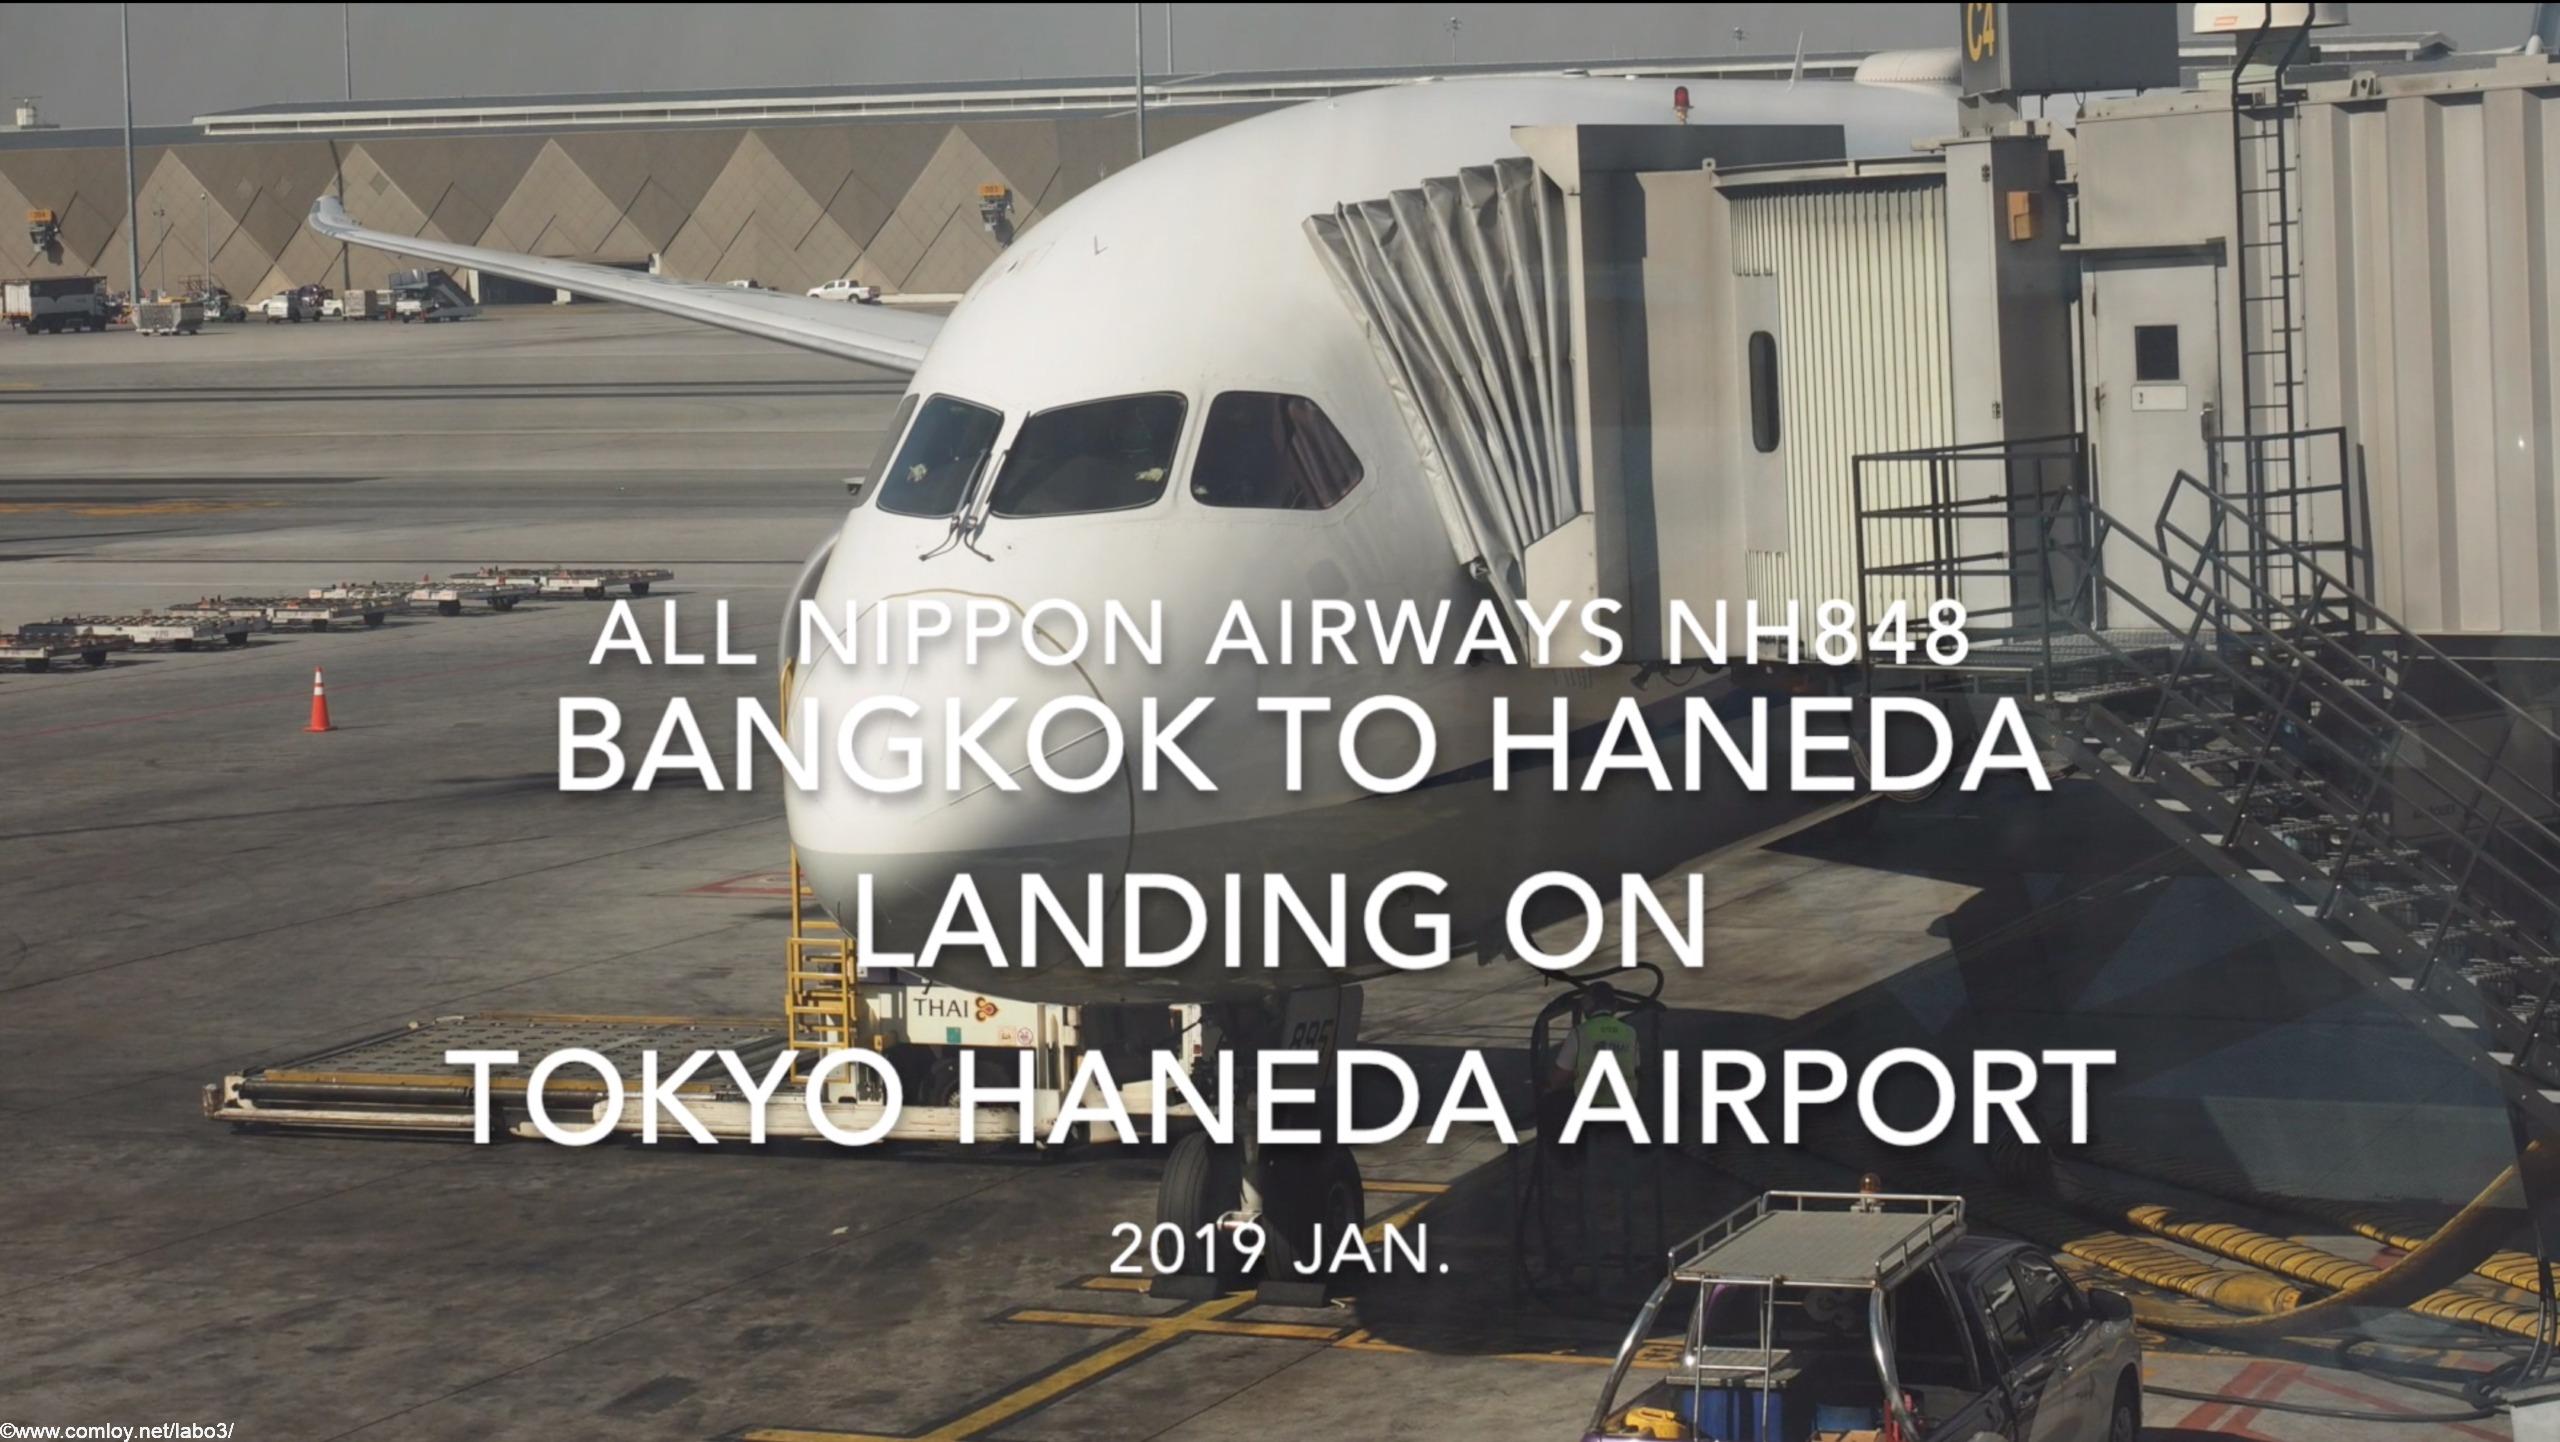 【機内から離着陸映像】2019 Jan. All Nippon Airways NH848 BANGKOK to TOKYO HANEDA Landing HANEDA Airport 全日空 バンコク - 羽田 羽田空港着陸